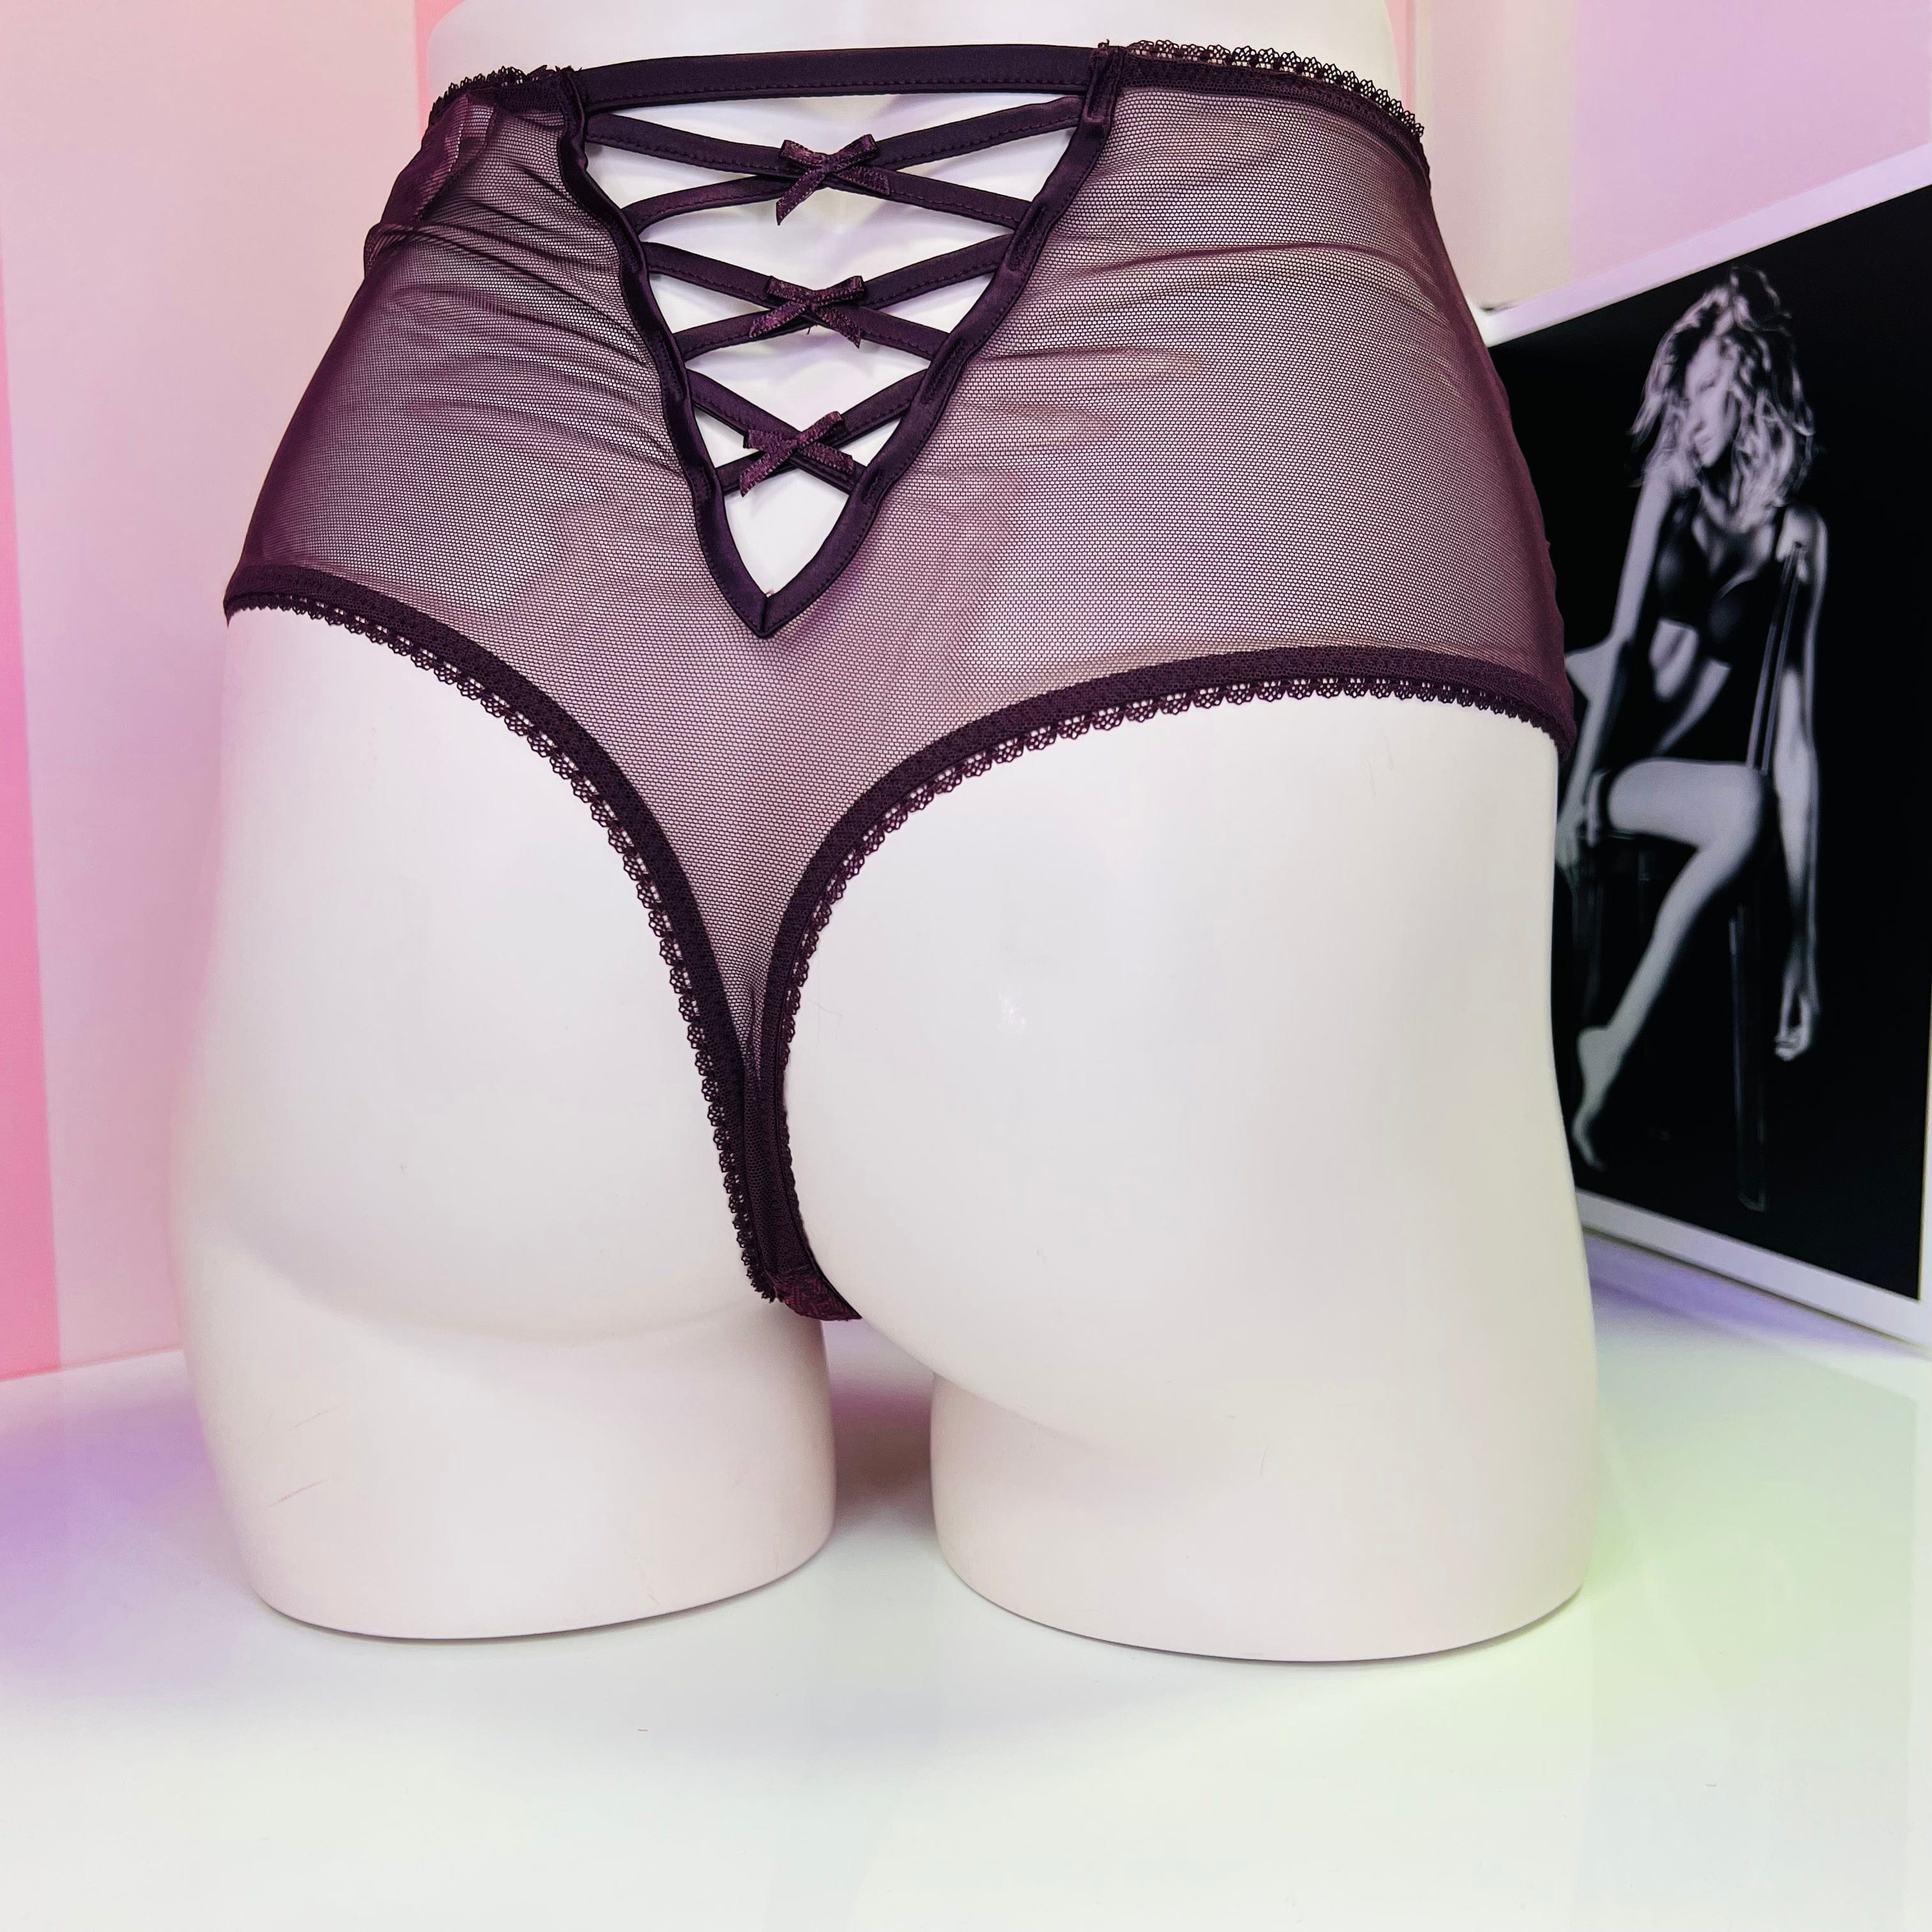 Síťované tanga - M / Vínová / Nové se štítky - Kalhotky Victoria’s Secret